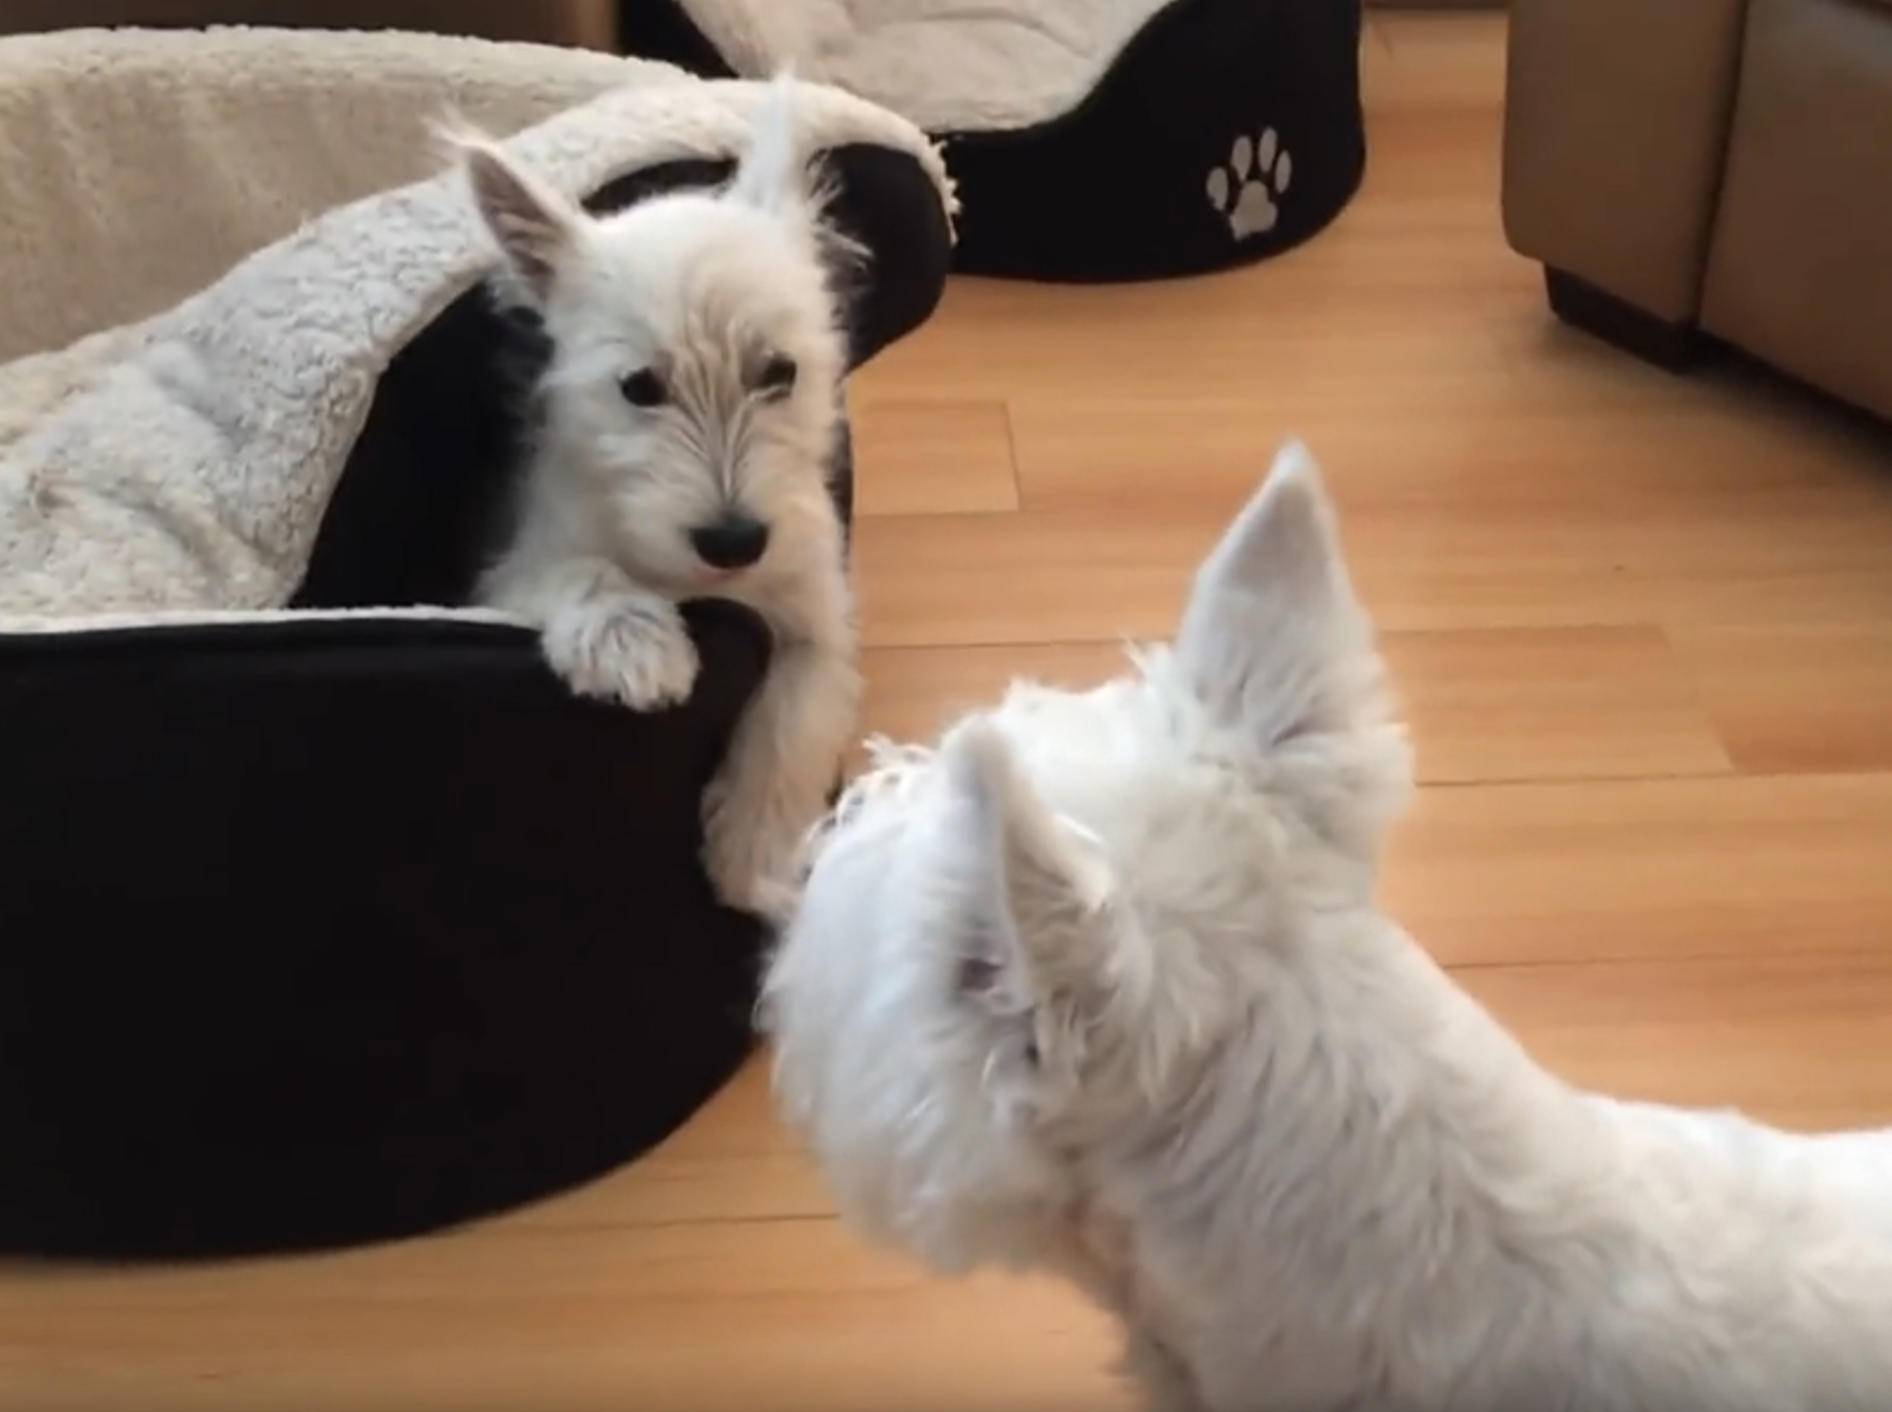 Zwei Westhighland White Terrier spielen Verstecken – YouTube / Rumble Viral